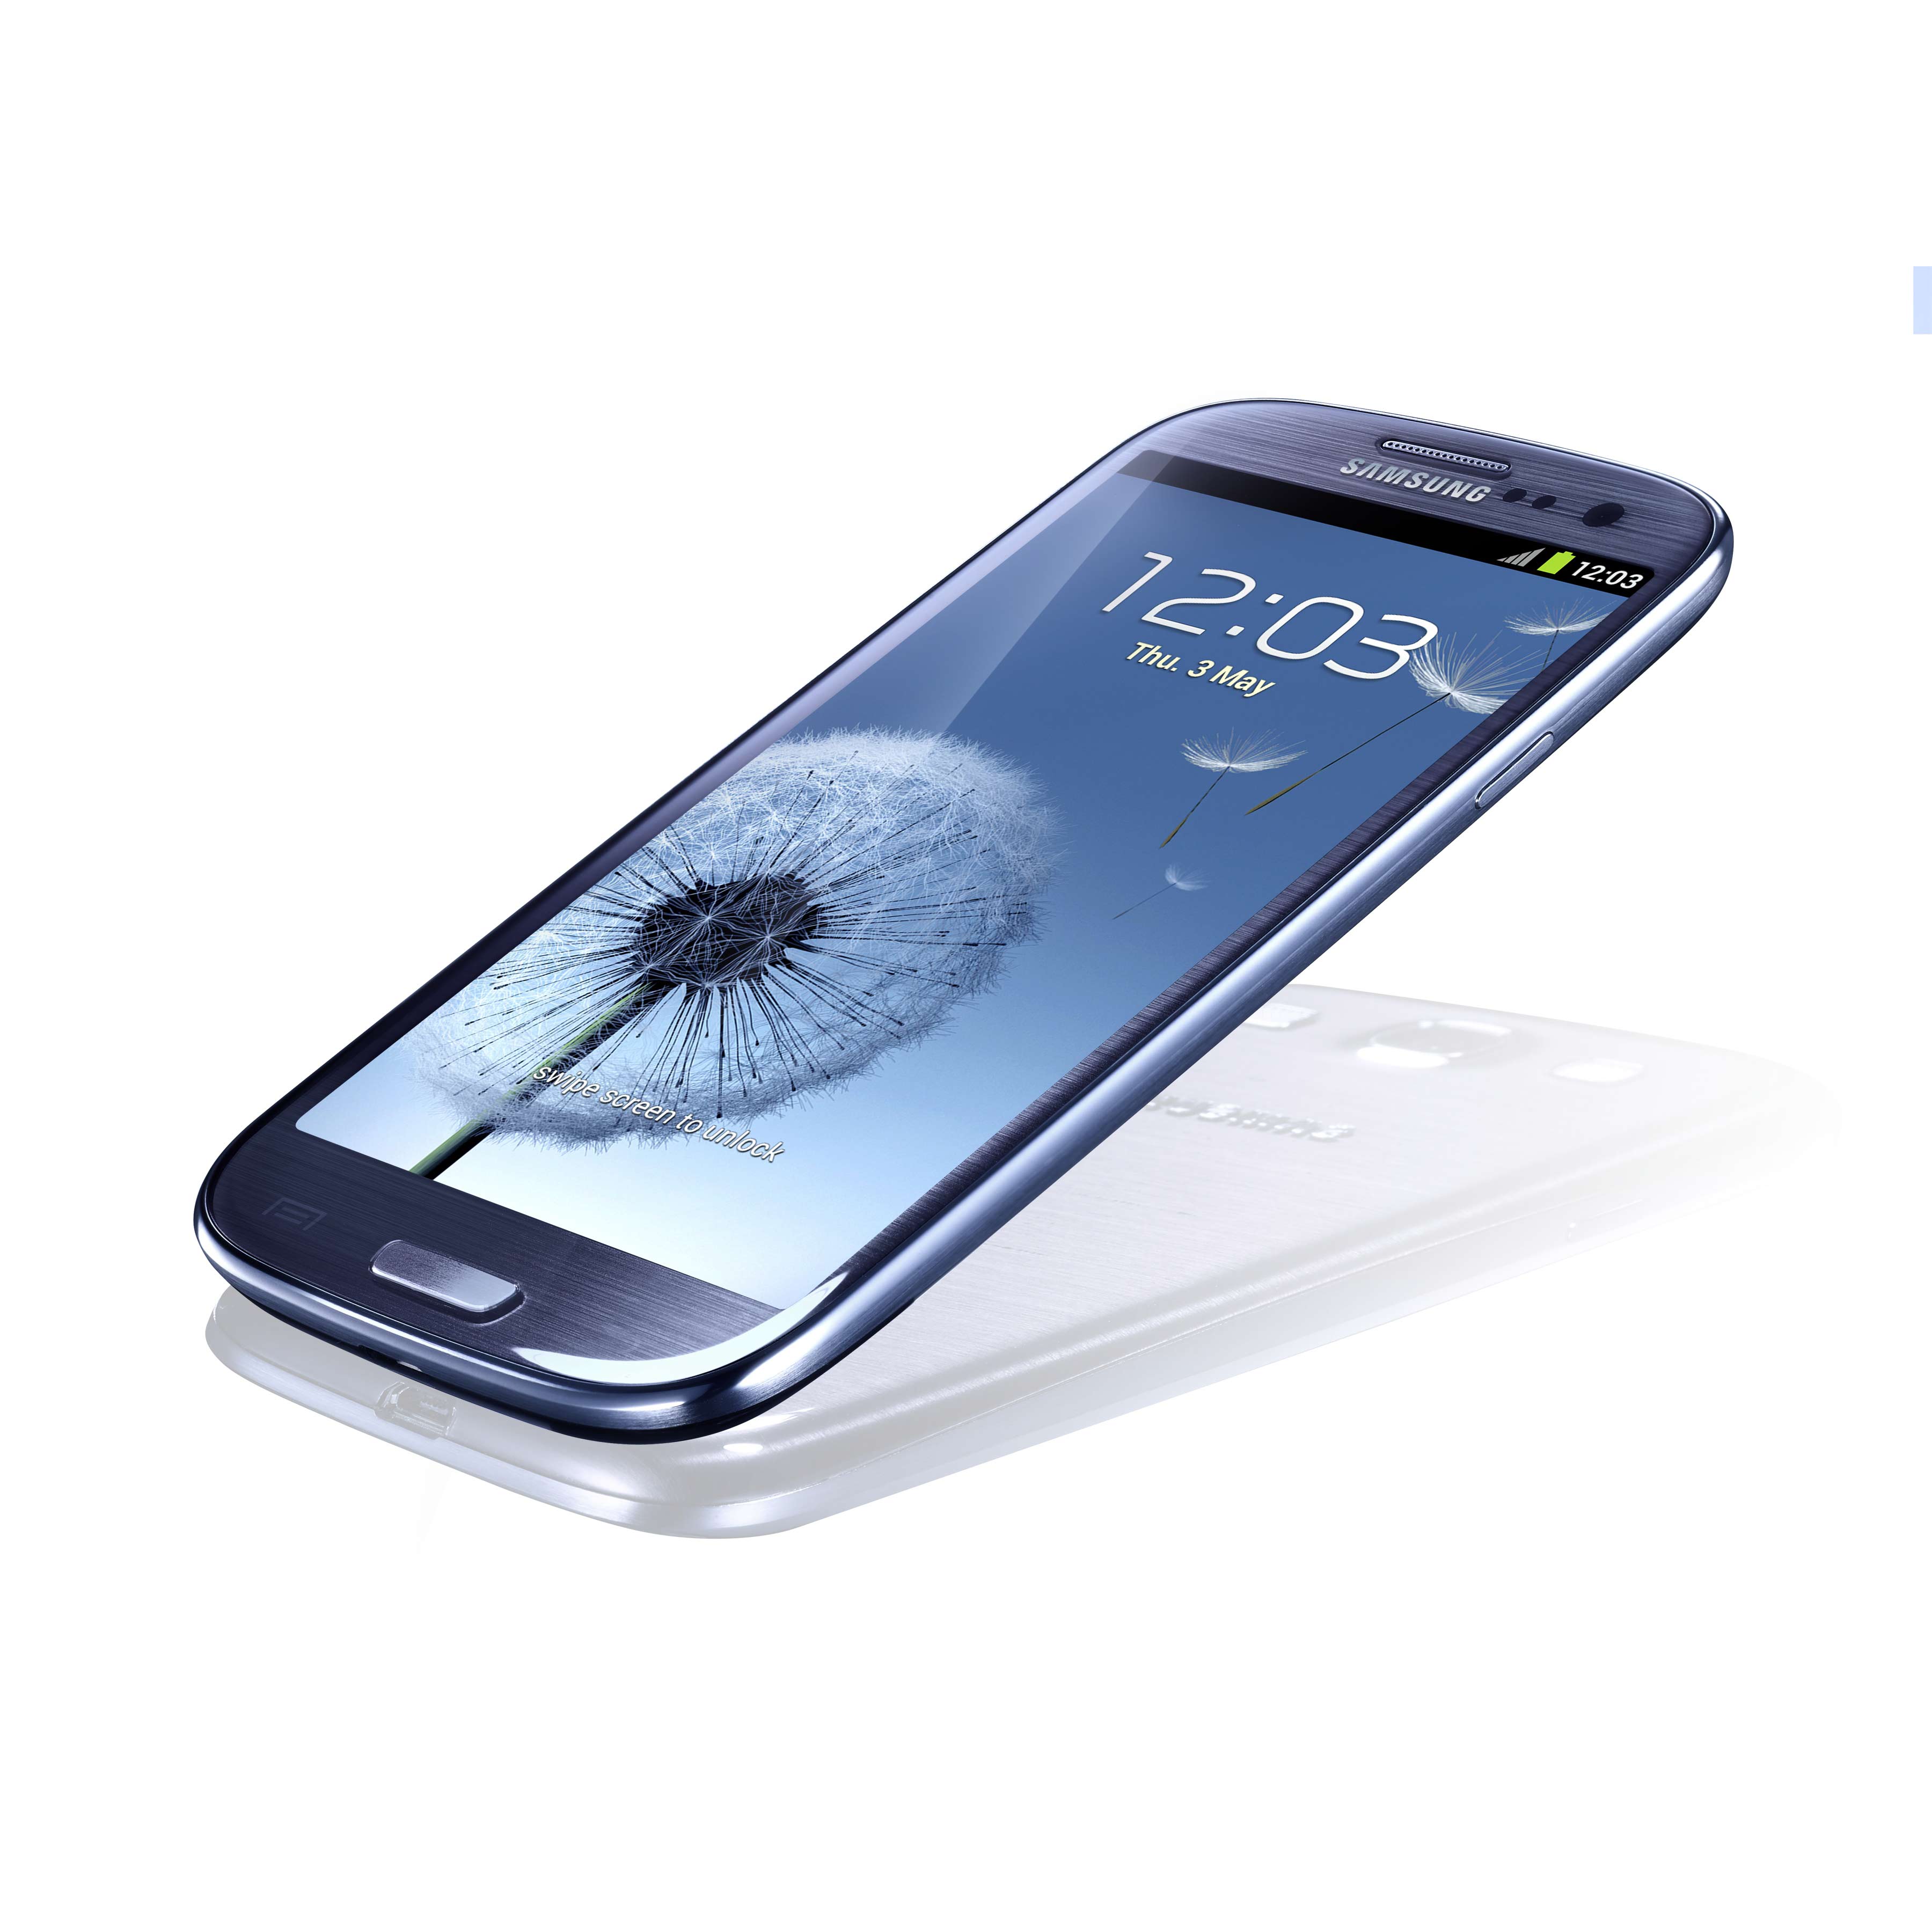 Мобильные телефоны купить цена. Samsung Galaxy s III gt-i9300 16gb. I9300 Galaxy s III 16gb Samsung. Samsung Galaxy s3 Neo. Смартфон Samsung Galaxy s III 4g gt-i9305.